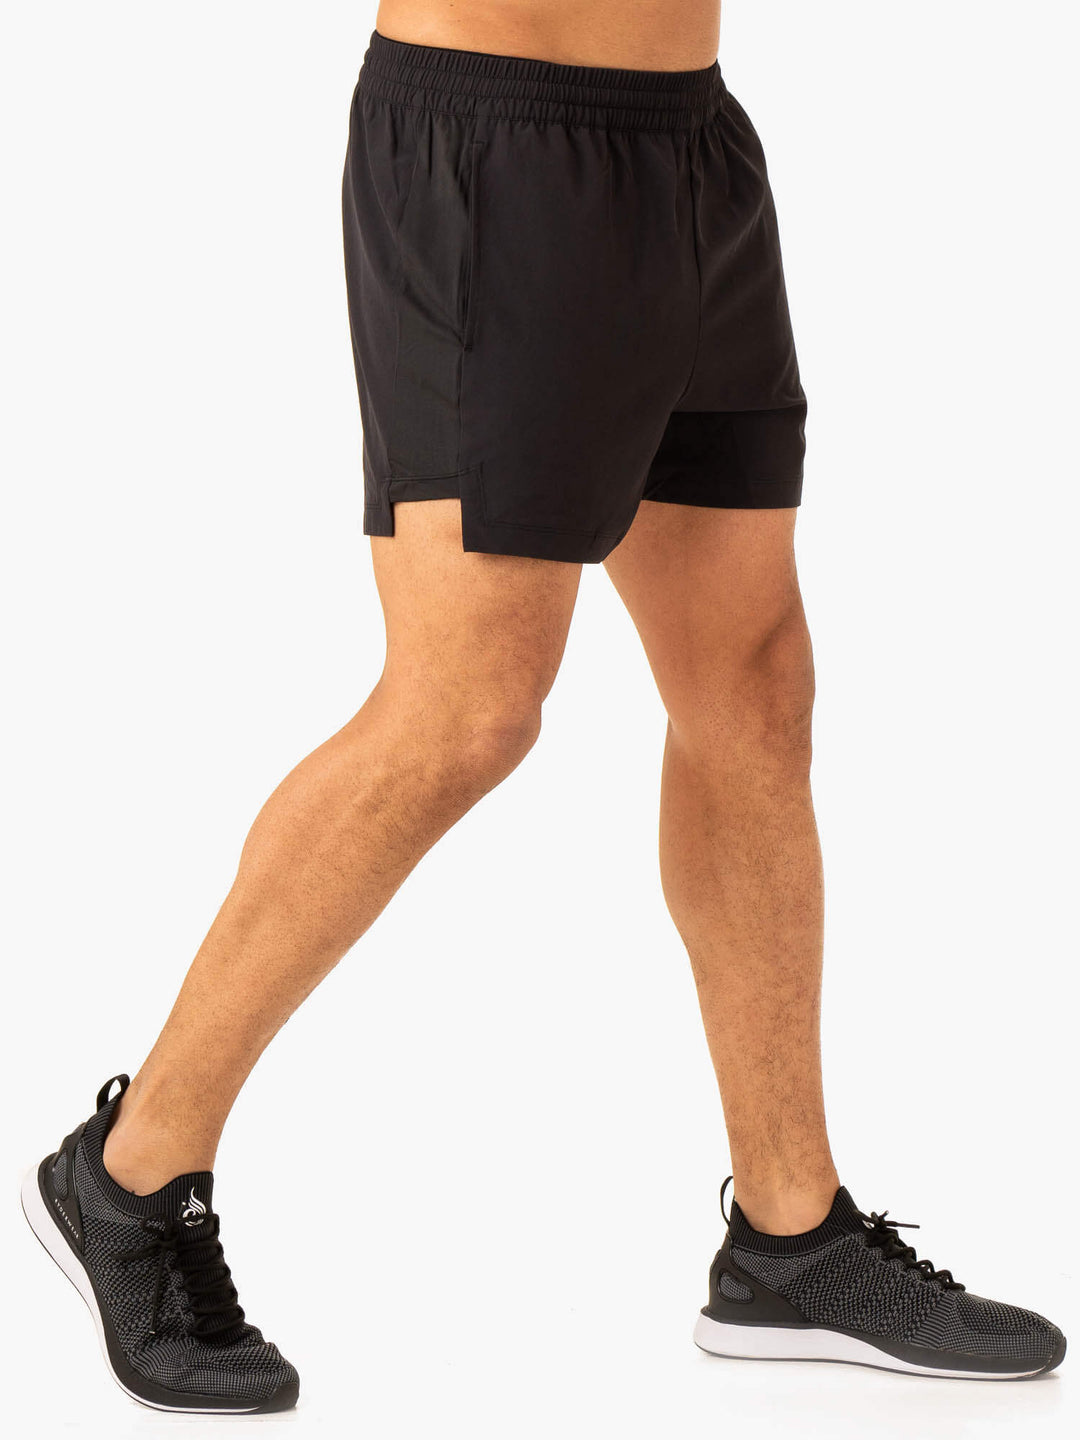 Vital Gym Short - Faded Black Clothing Ryderwear 